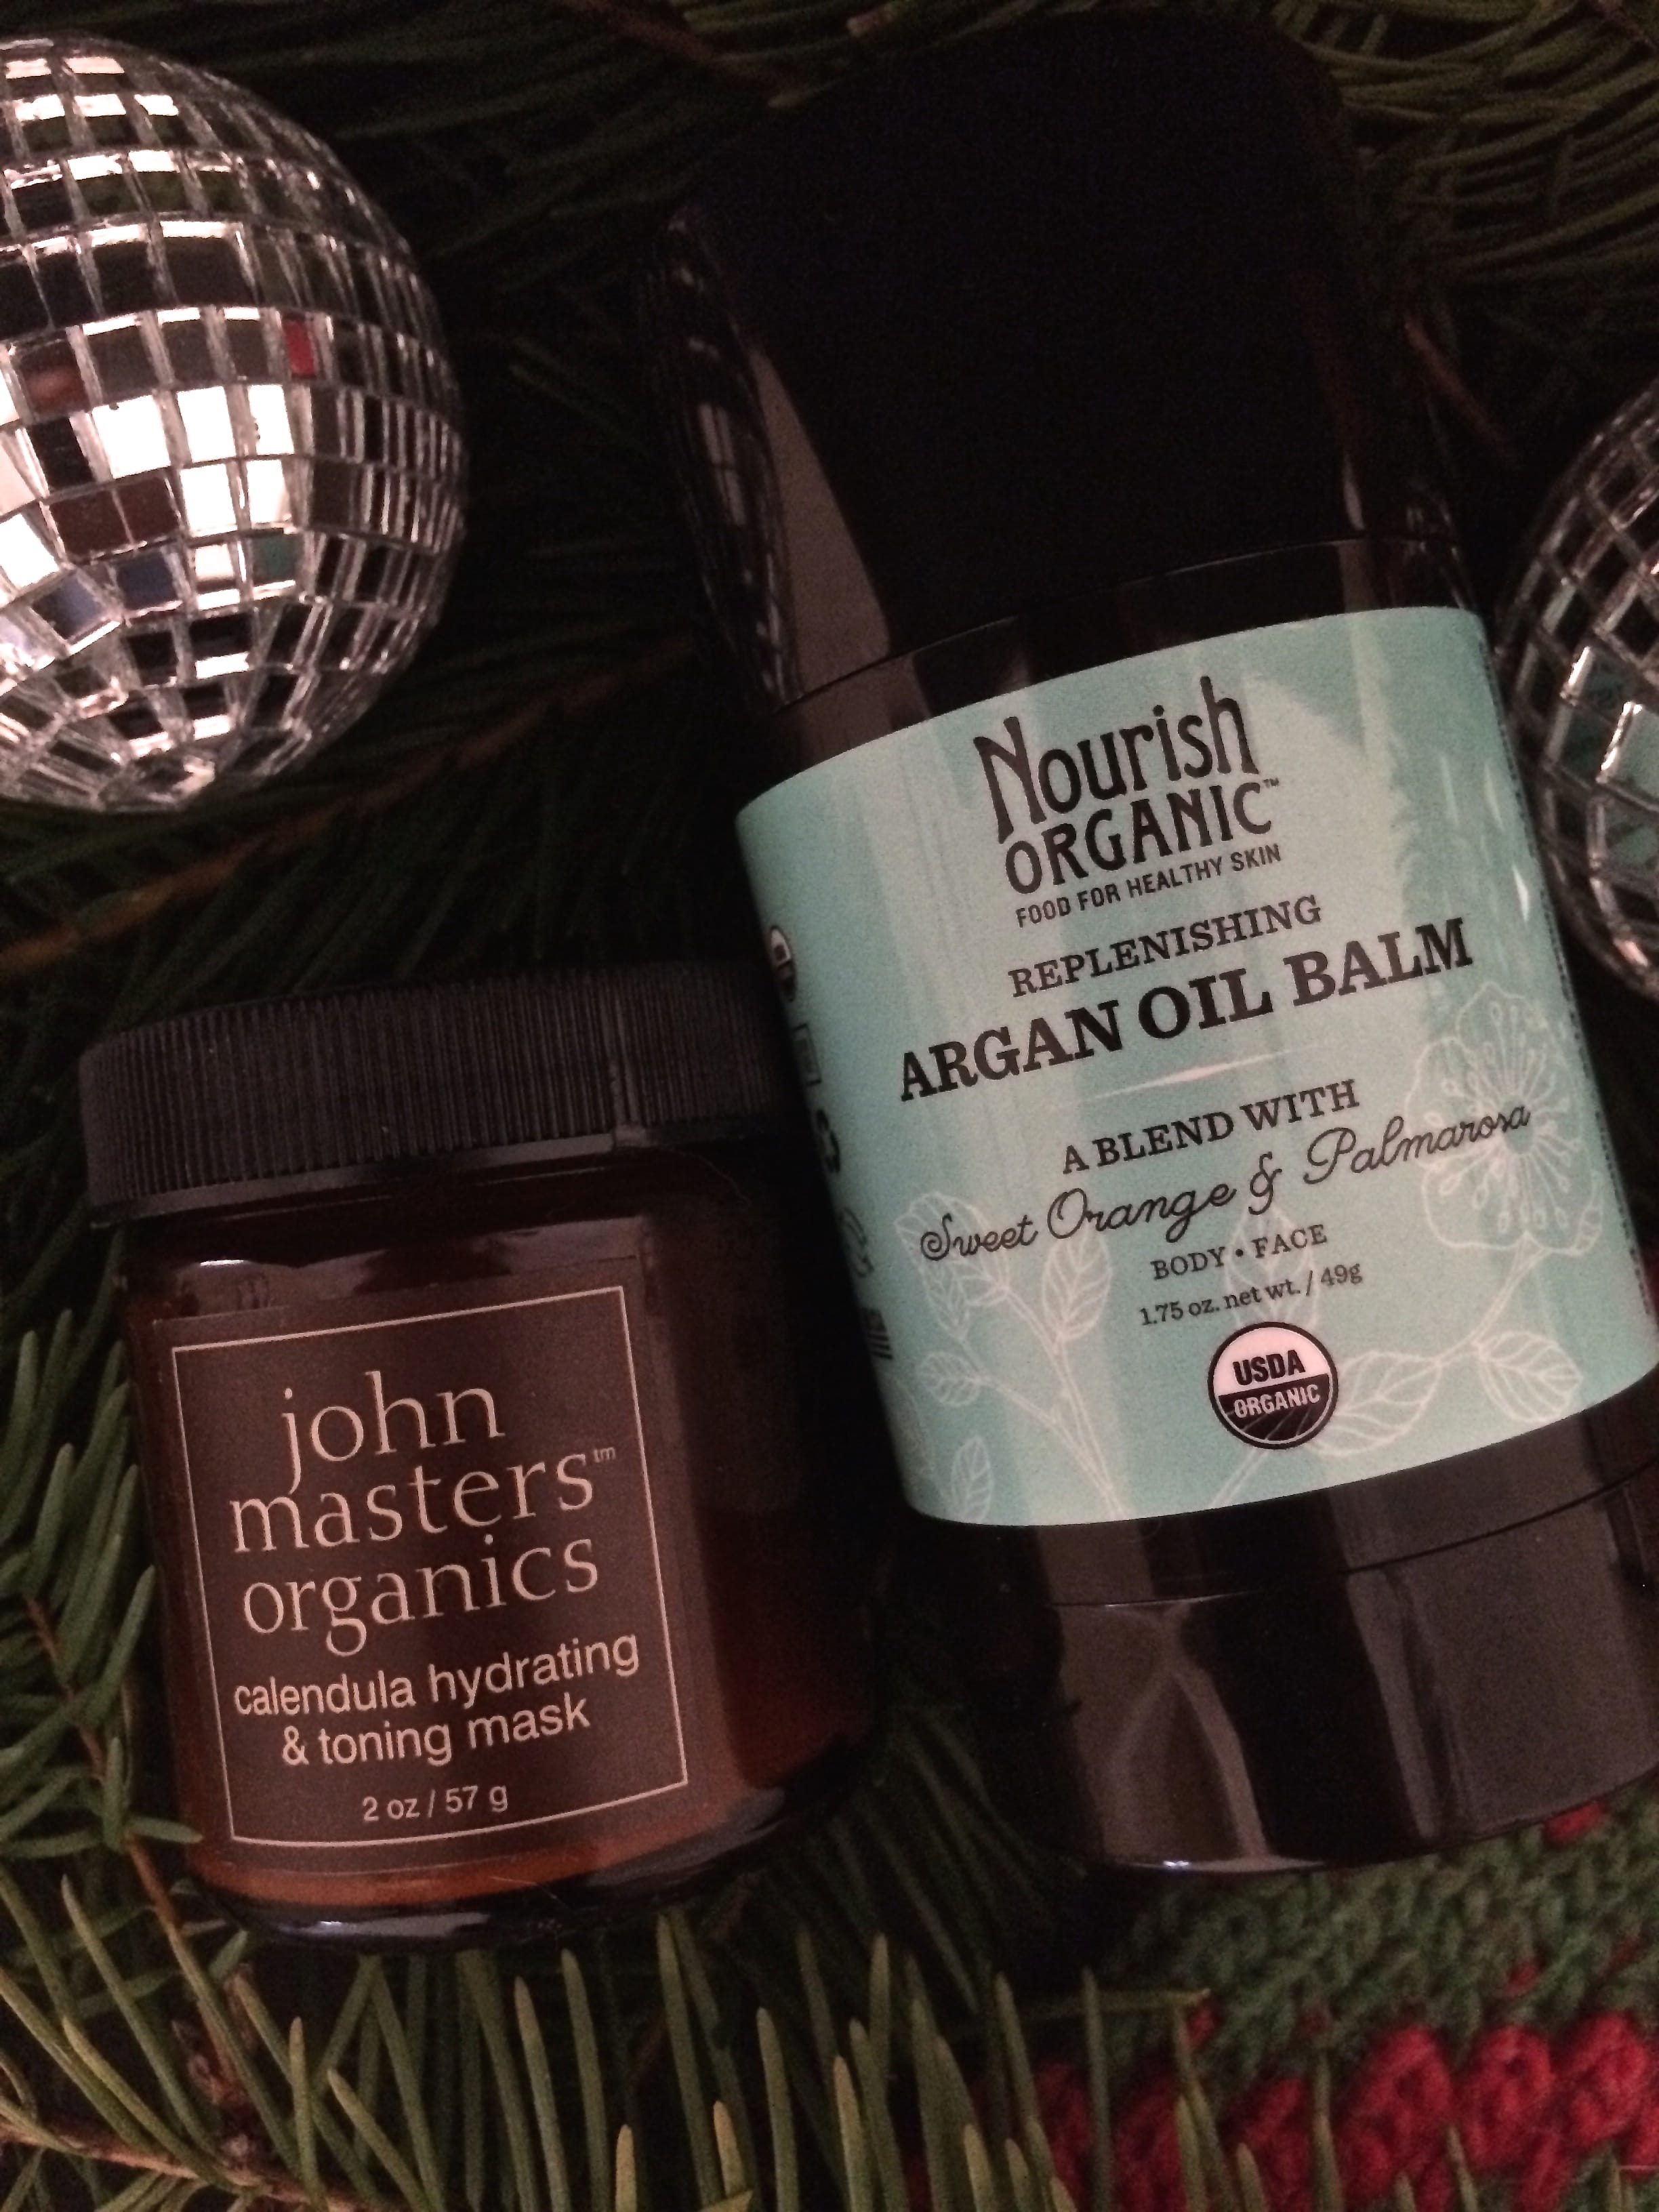 last minute gift ideas, John Masters Organics, calendula face mask, argan oil balm, Nourish Organic